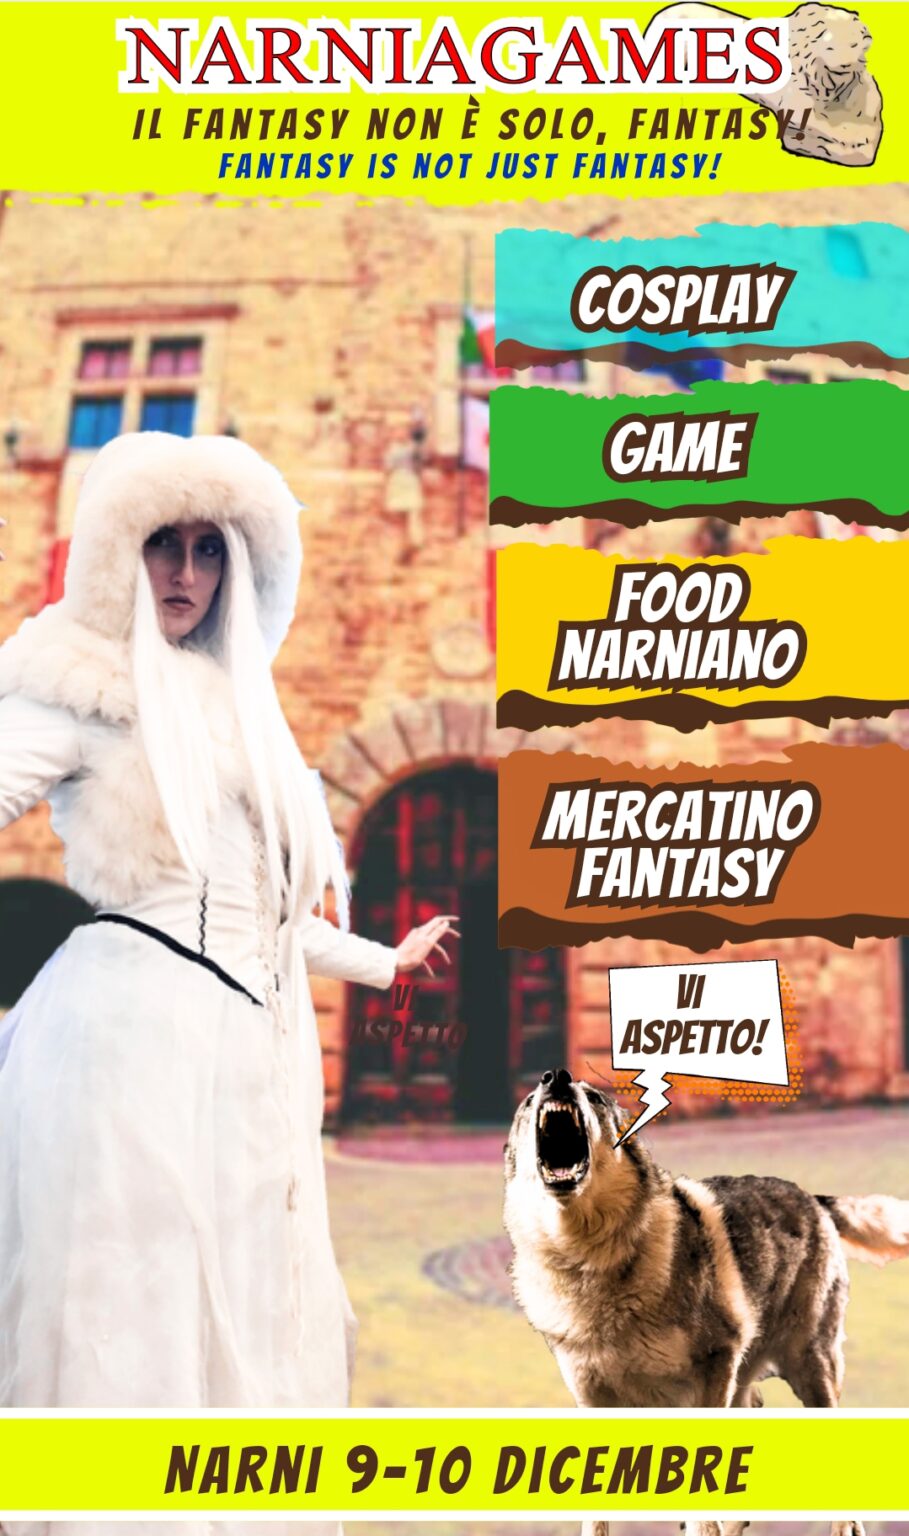 Narniagames un gioco fantasy che trasforma la città